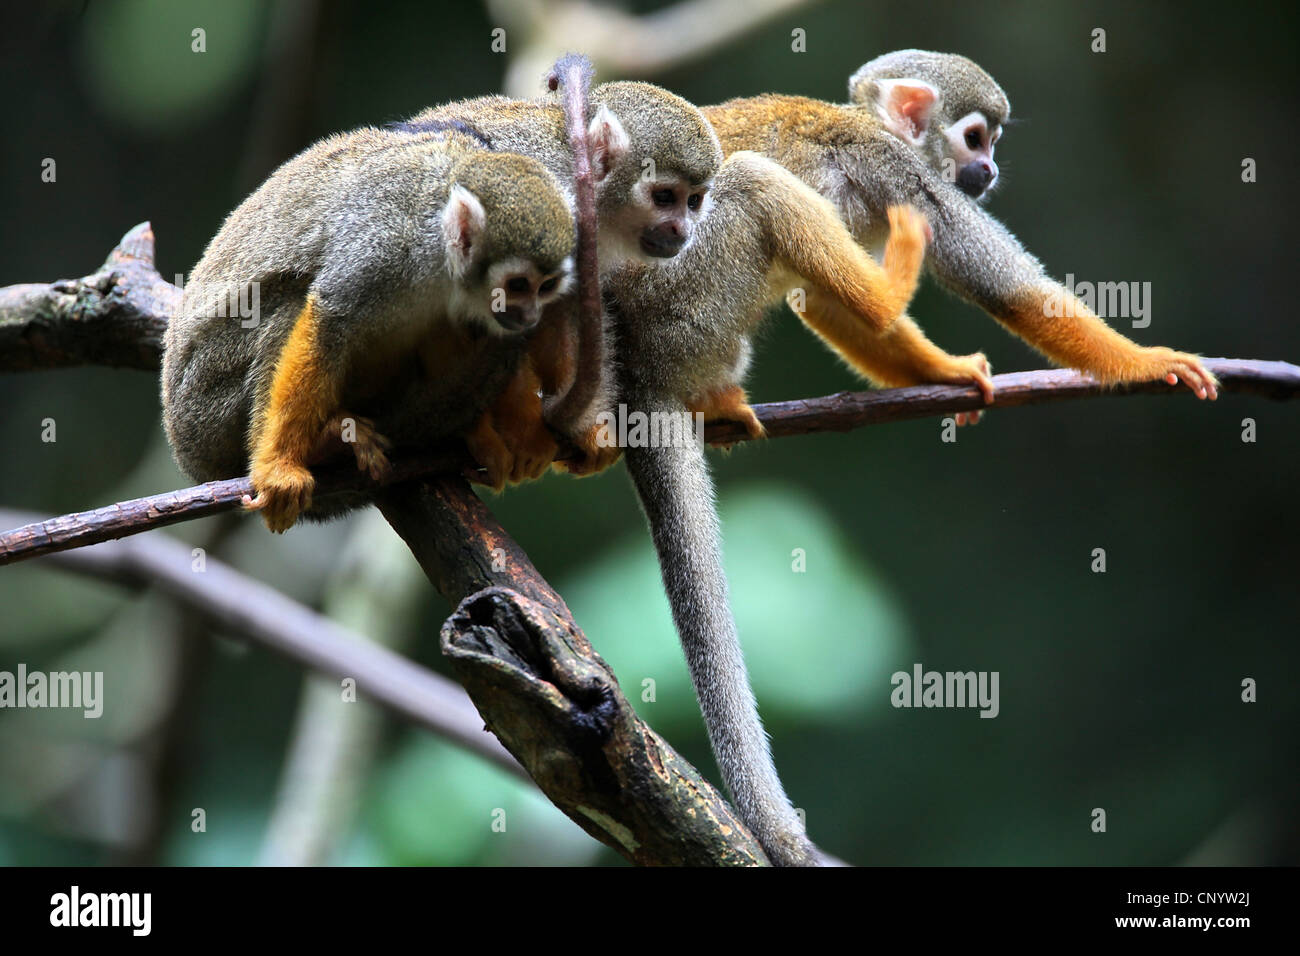 Common mono ardilla (Saimiri sciureus), tres monos sentado en una rama, Brasil, párr. Foto de stock